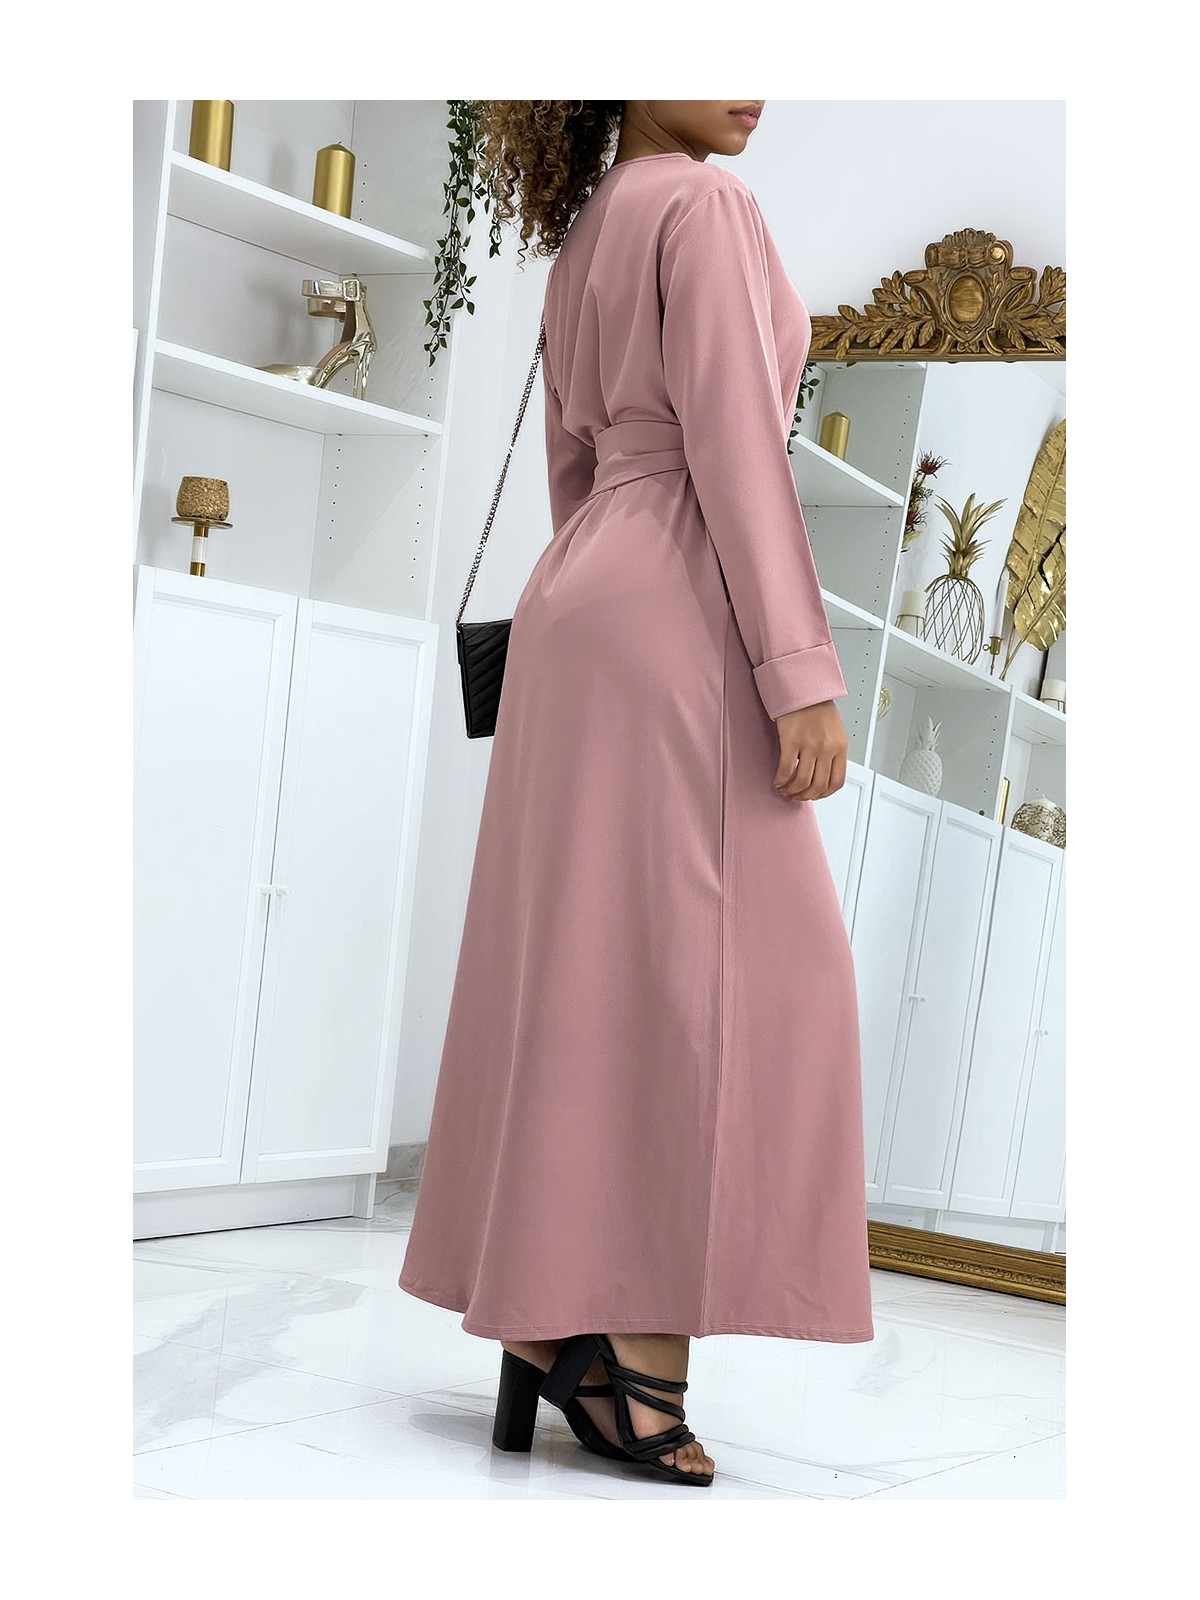 Longue abaya rose avec poches et ceinture - 3